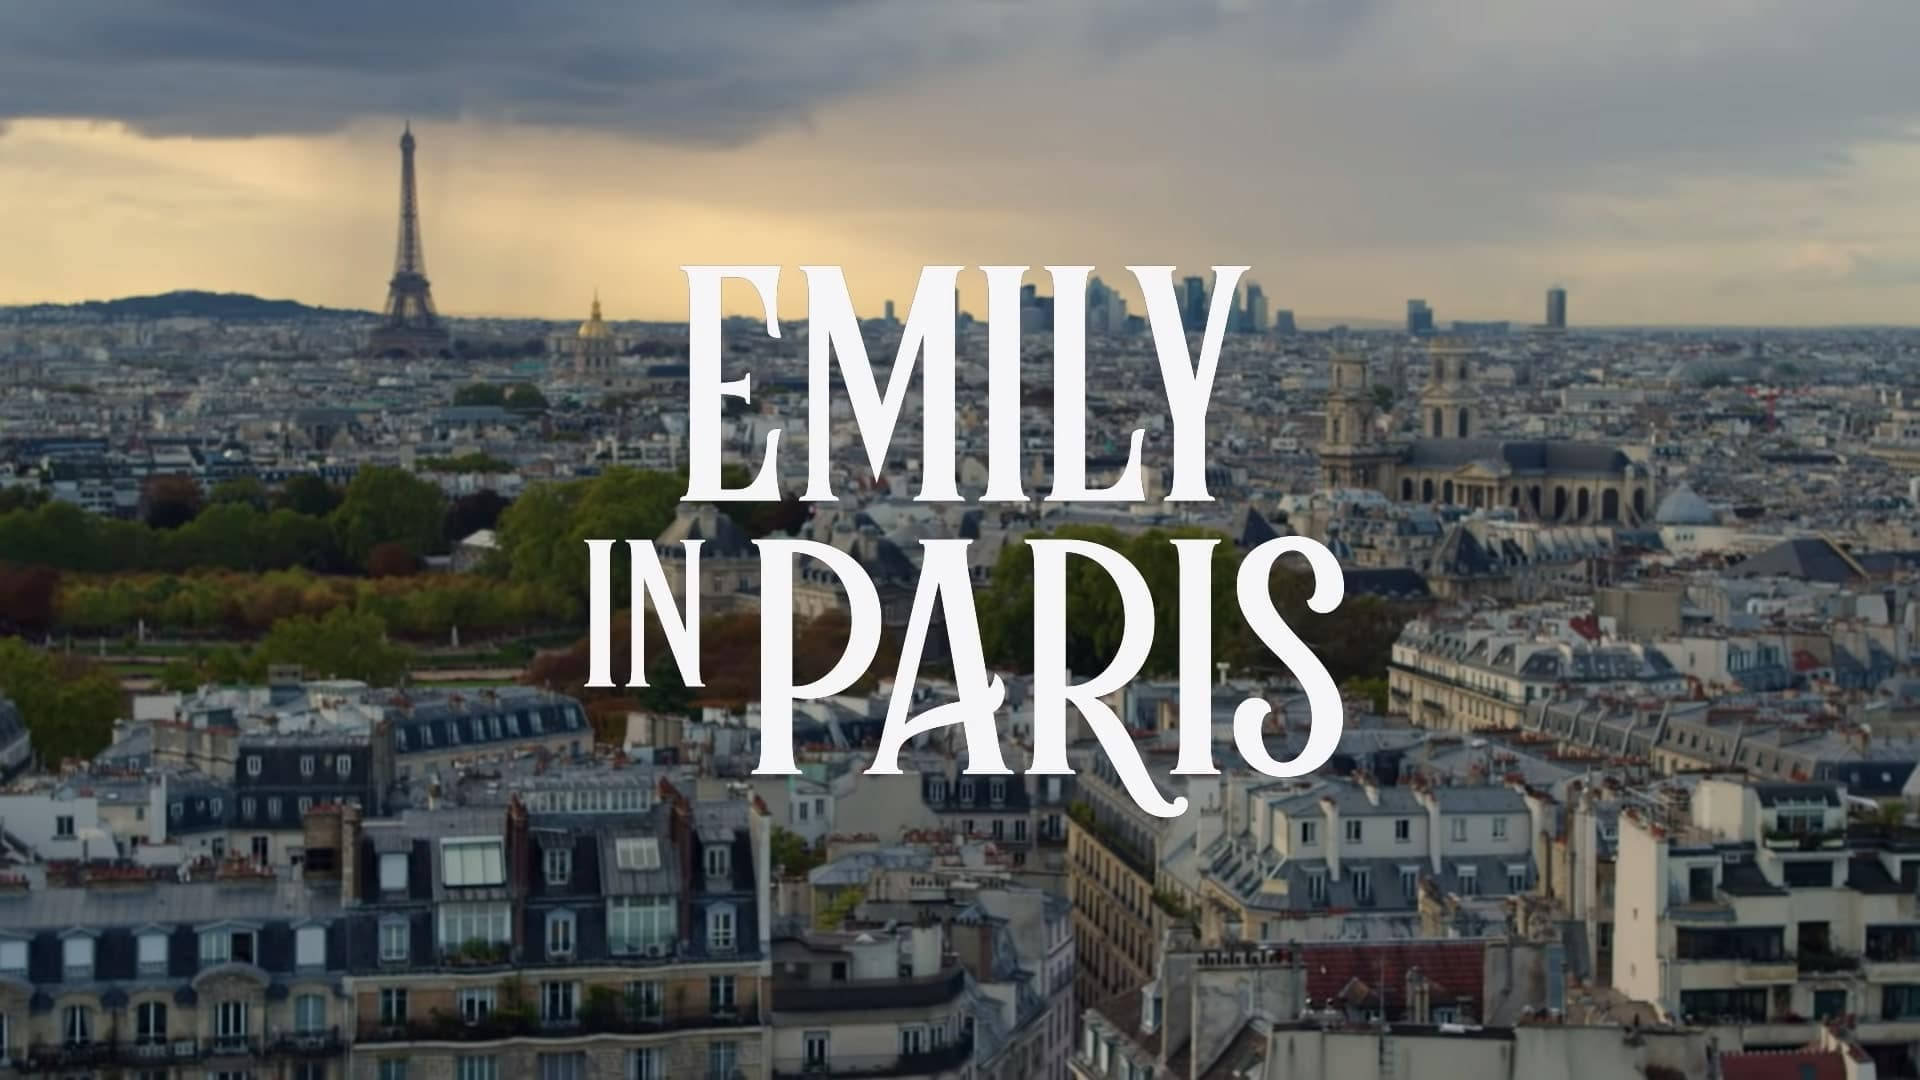 Emily embraces the beauty of Paris. Wallpaper